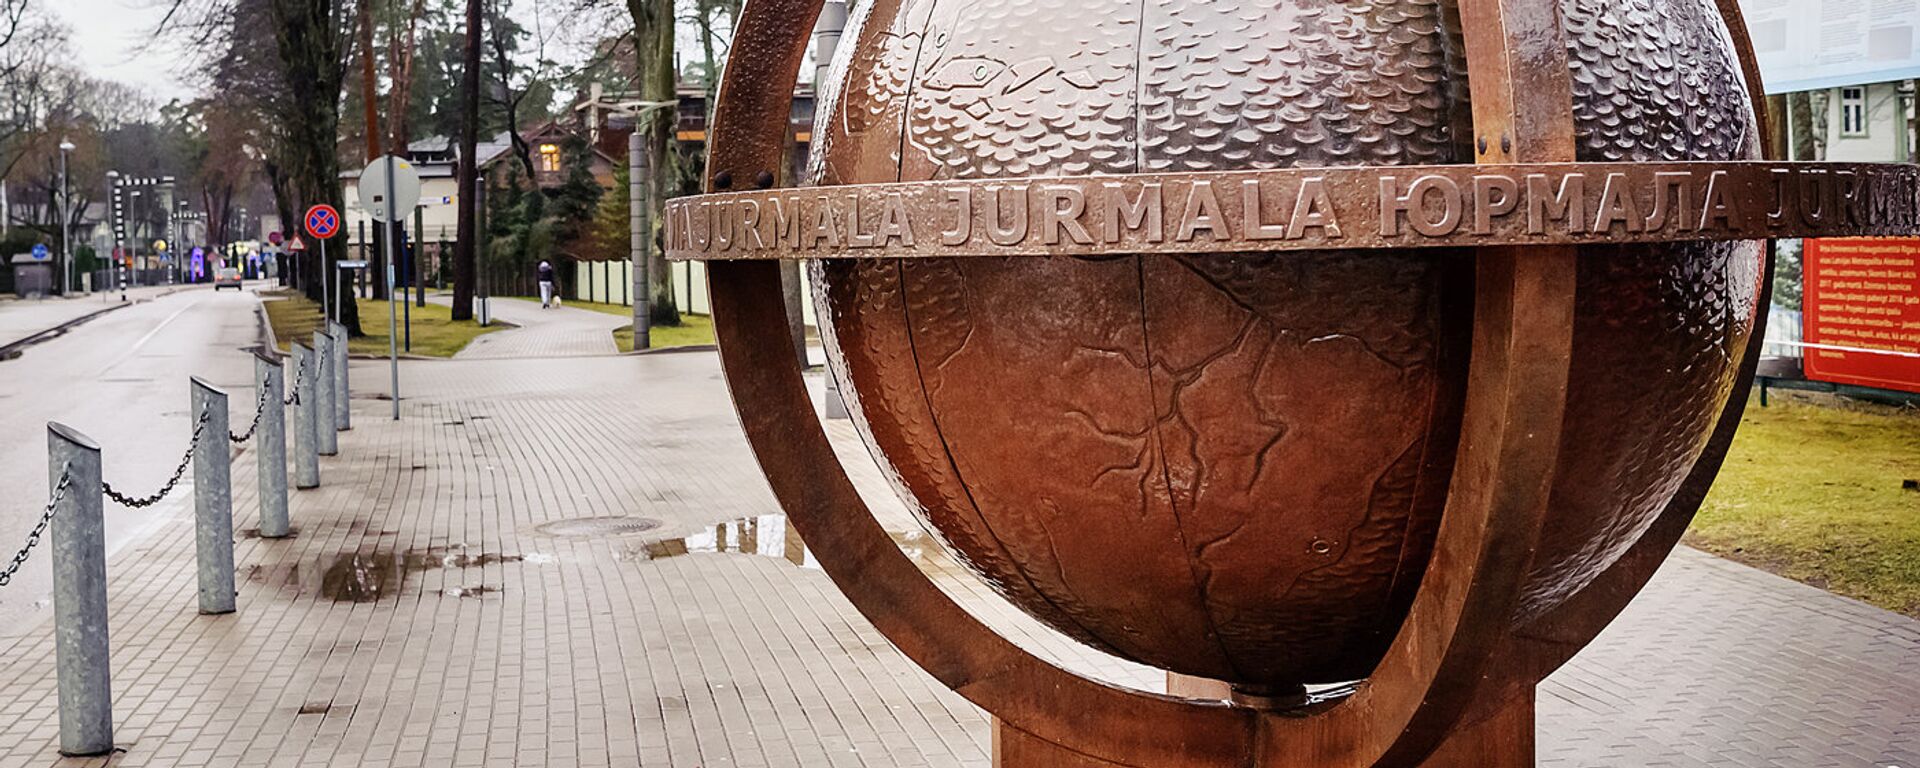 Юрмальский глобус на улице Йомас - Sputnik Латвия, 1920, 24.09.2020